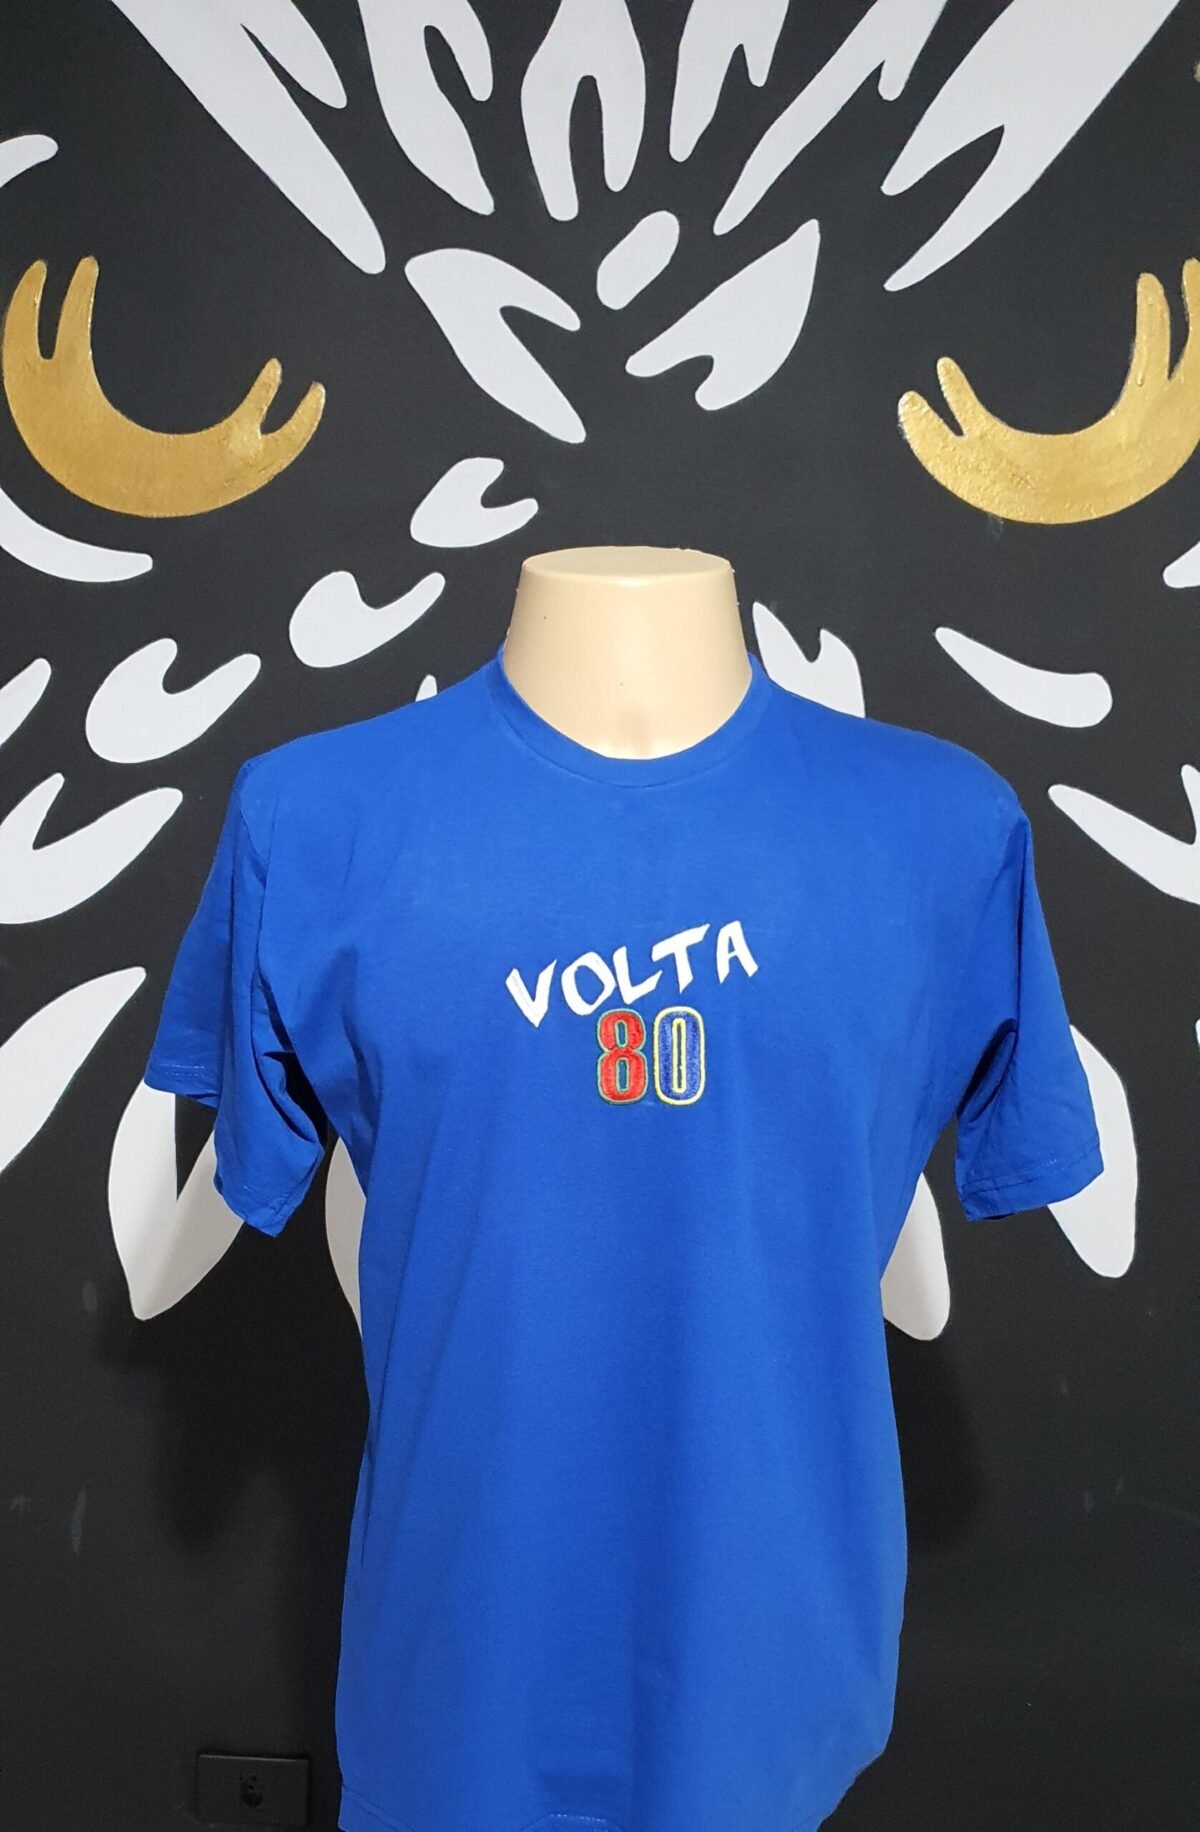 Camiseta Bordada Oficial da Festa Volta 80 by Bordado & Cia - @bordado.cia @volta80